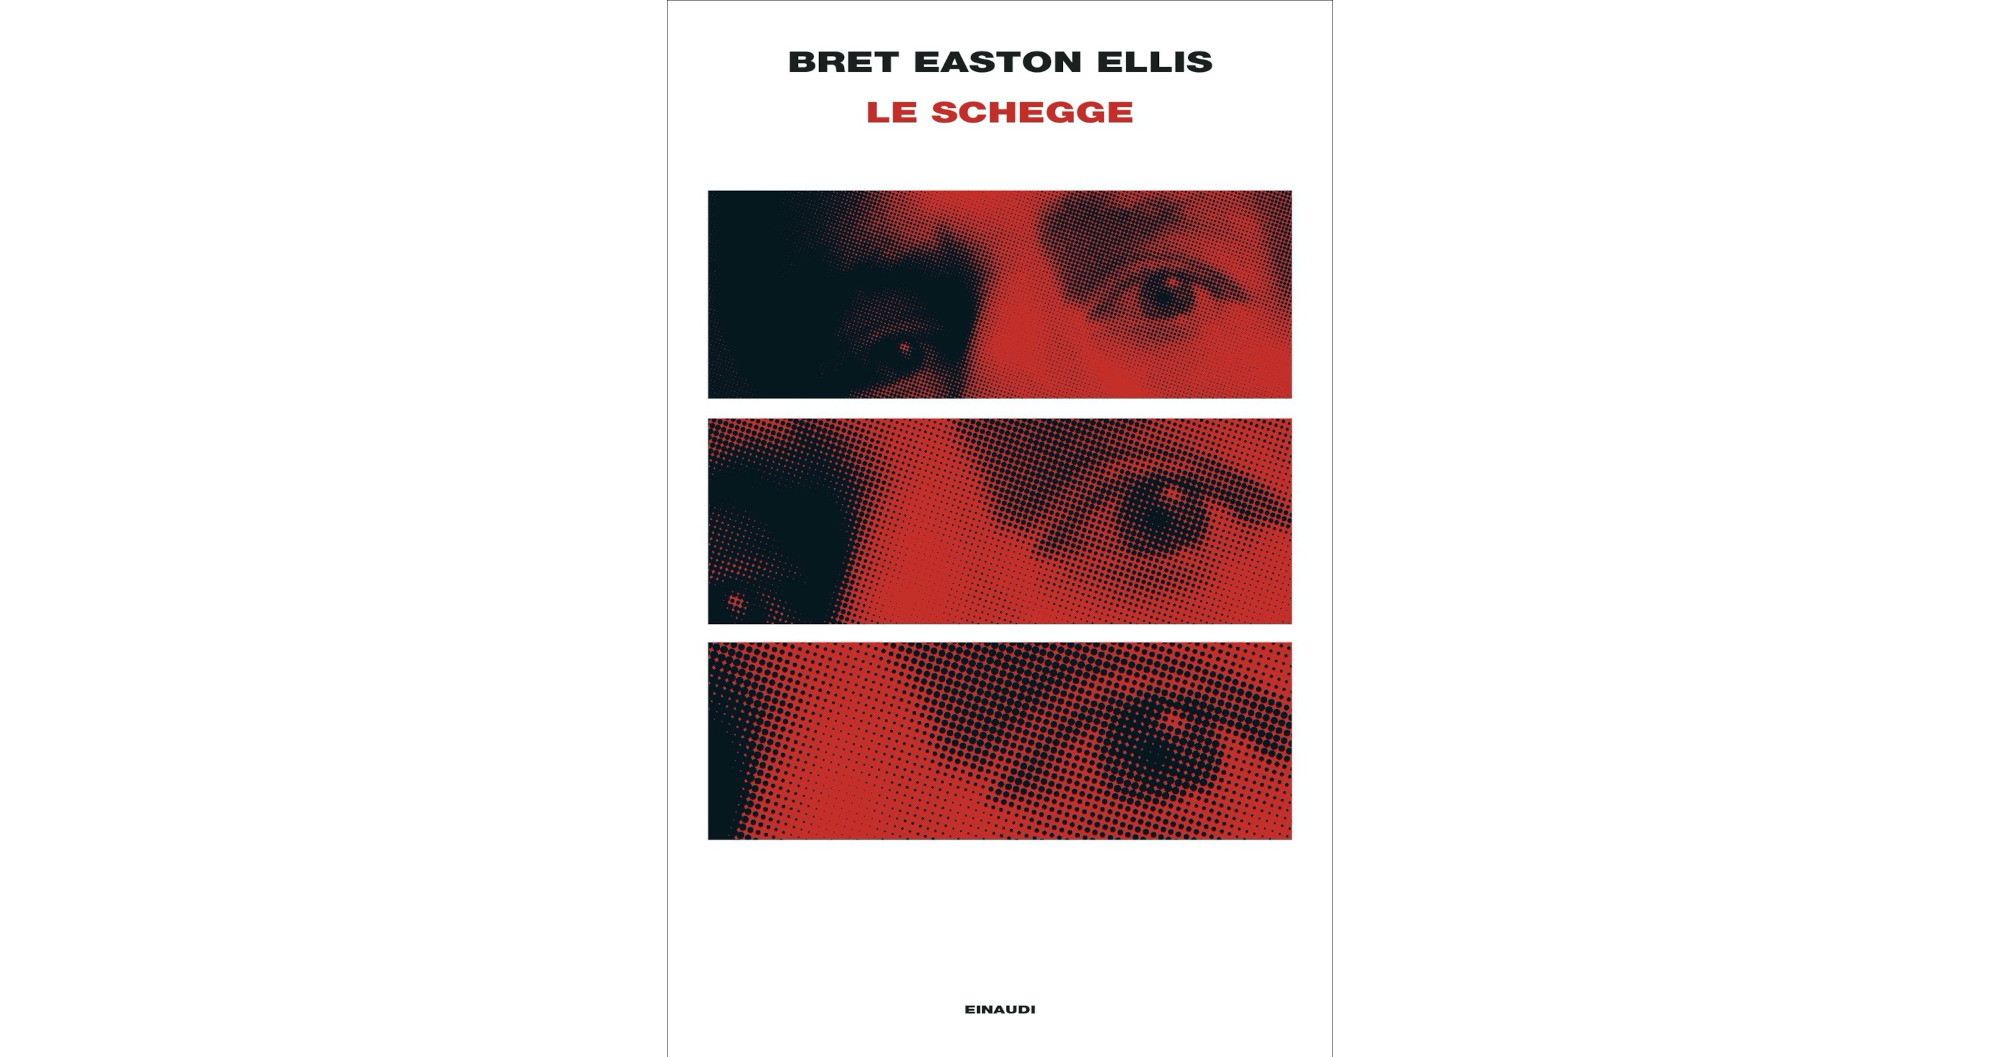 Le schegge, la recensione di Maila Cavaliere del romanzo di Bret Easton Ellis pubblicato in Italia da Einaudi.